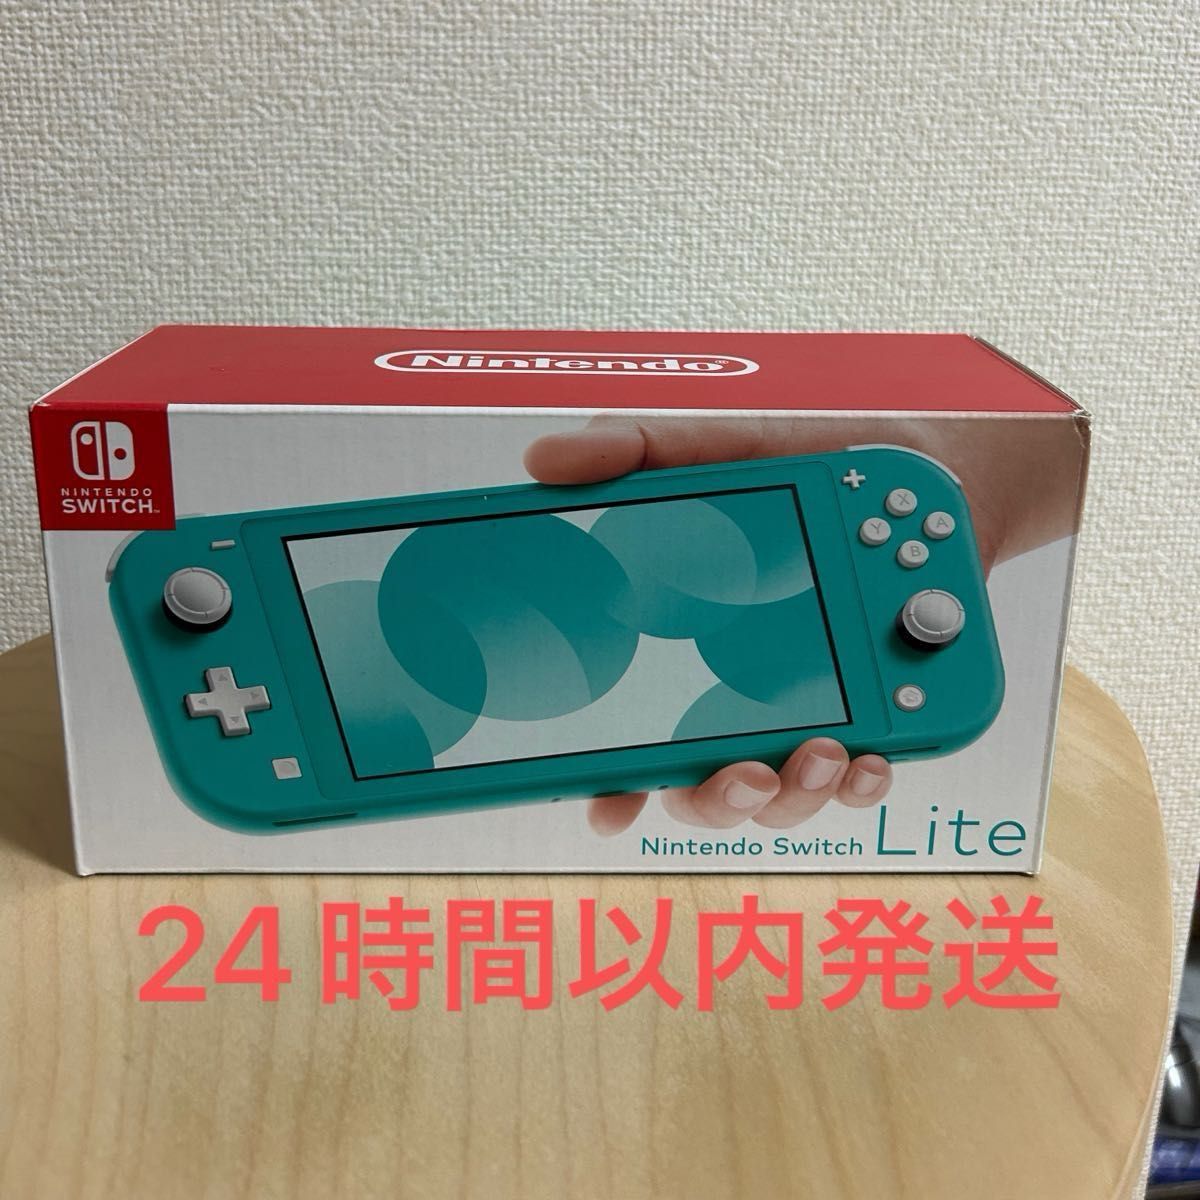 【24時以内発送】Nintendo Switch NINTENDO SWITCH LITE ターコイズ